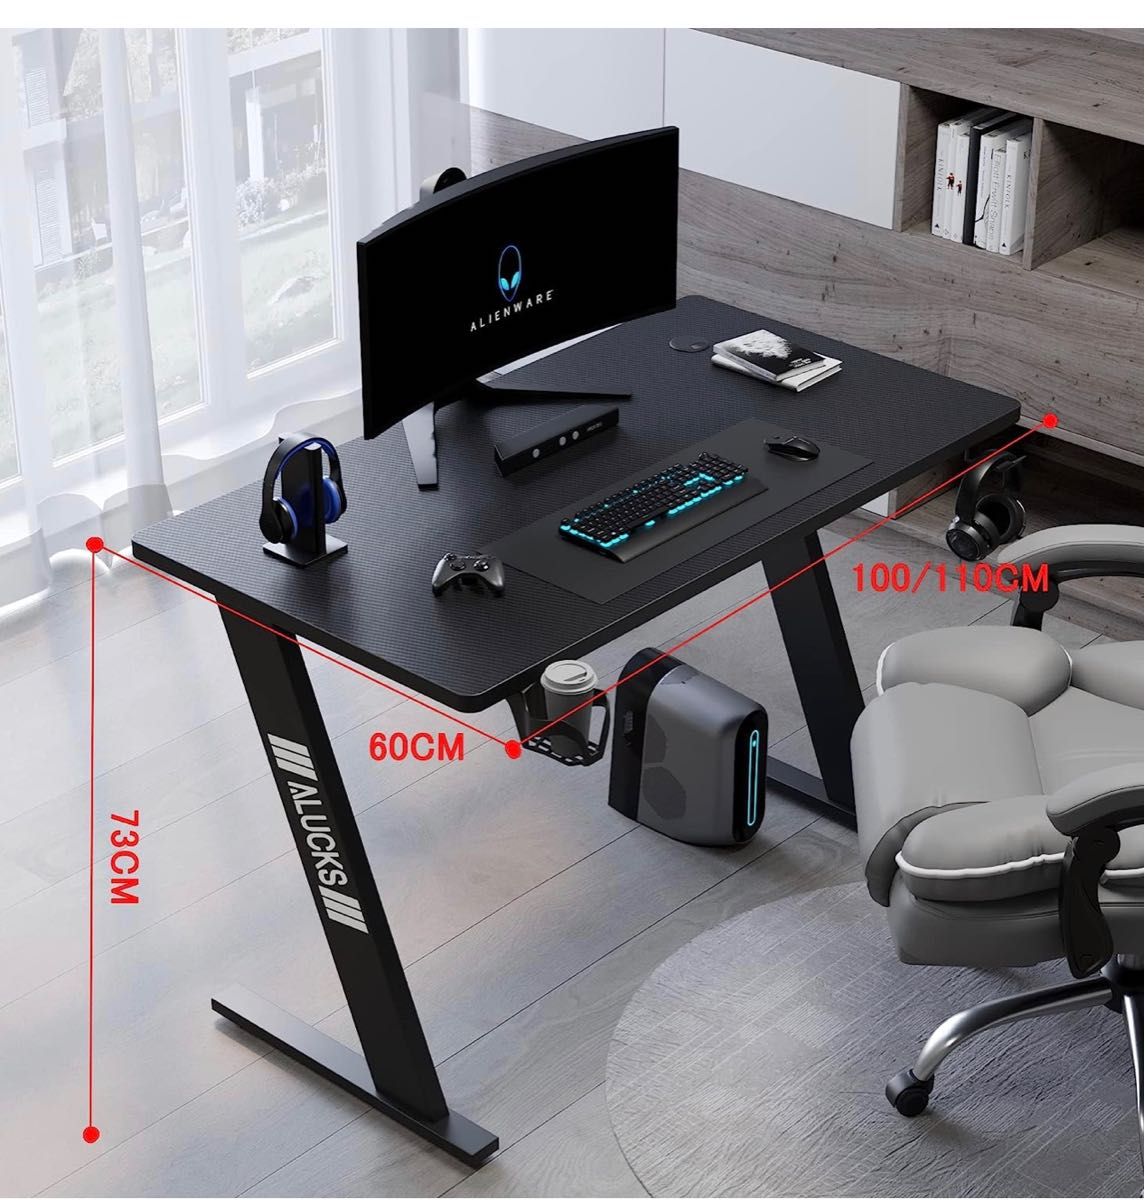 ゲームテーブル、コンピュータテーブル、コンピュータテーブル、学習テーブル、マウスパッドとカップホルダーとイヤホンフック